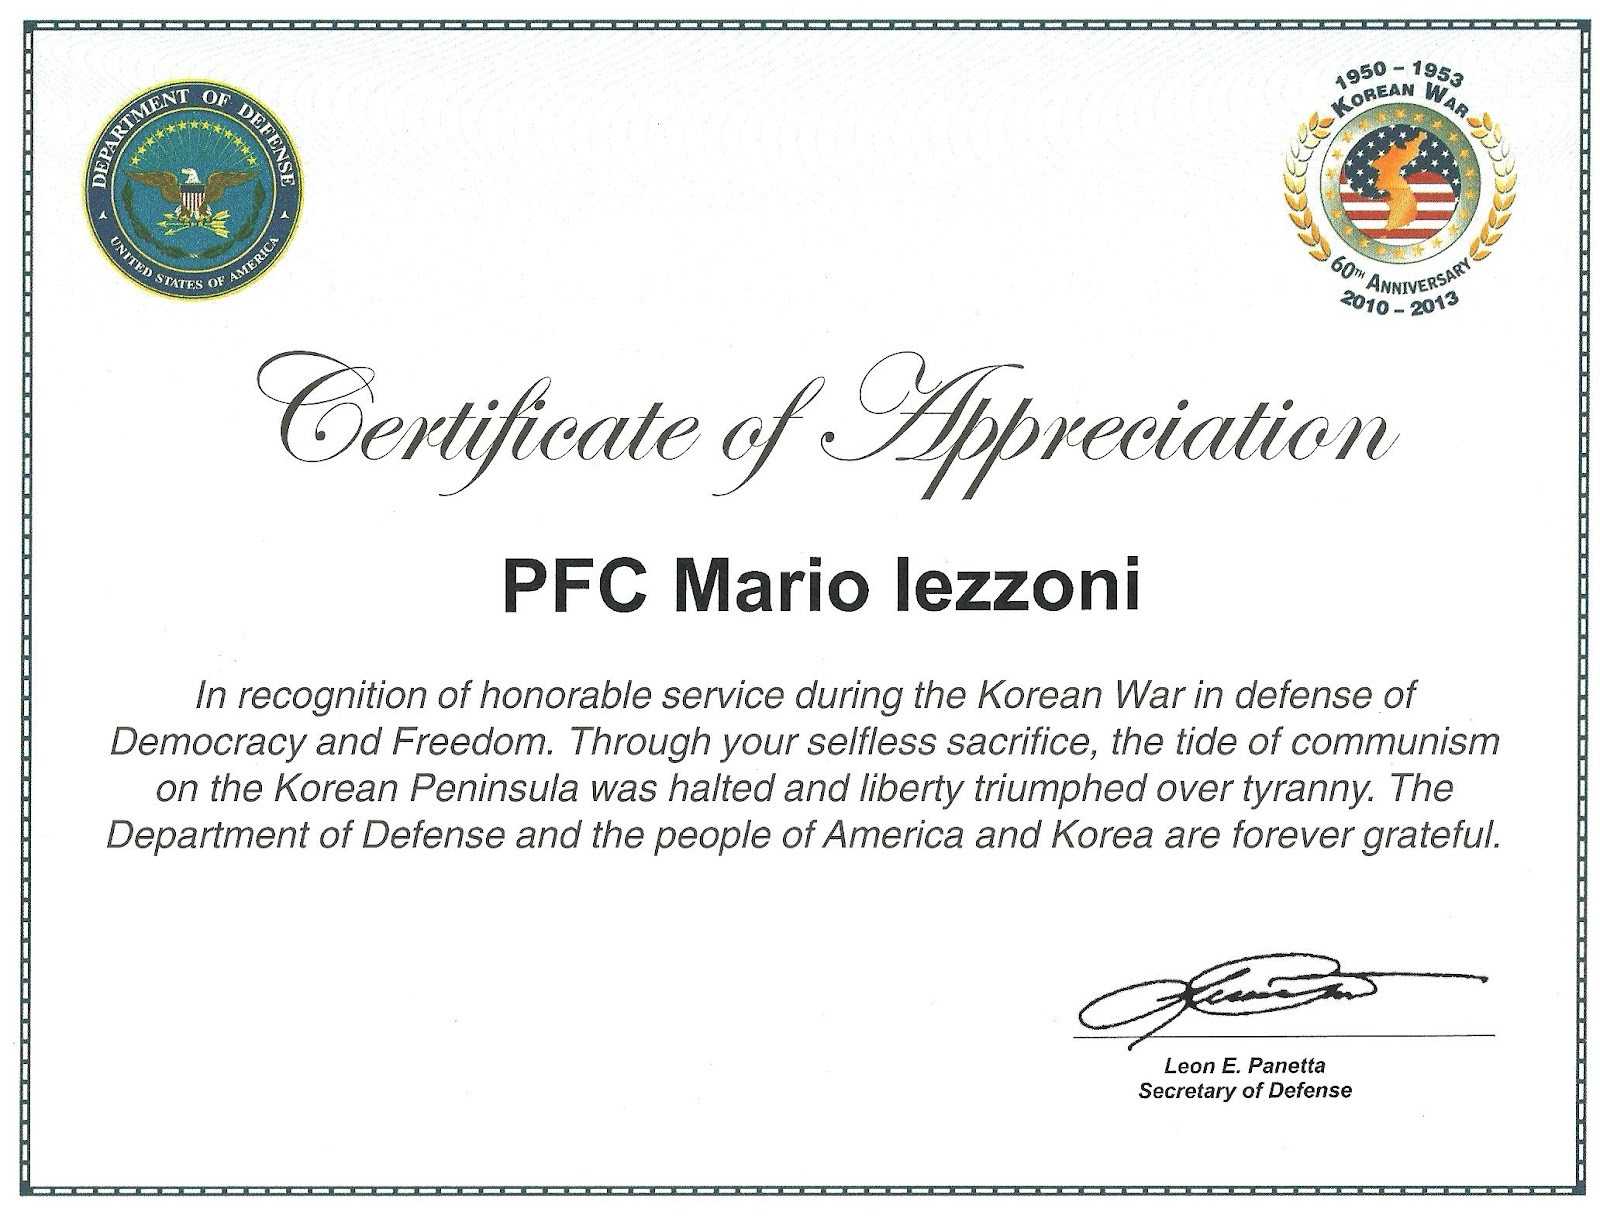 Veteran Certificate Of Appreciation Printable Related Throughout Army Certificate Of Appreciation Template